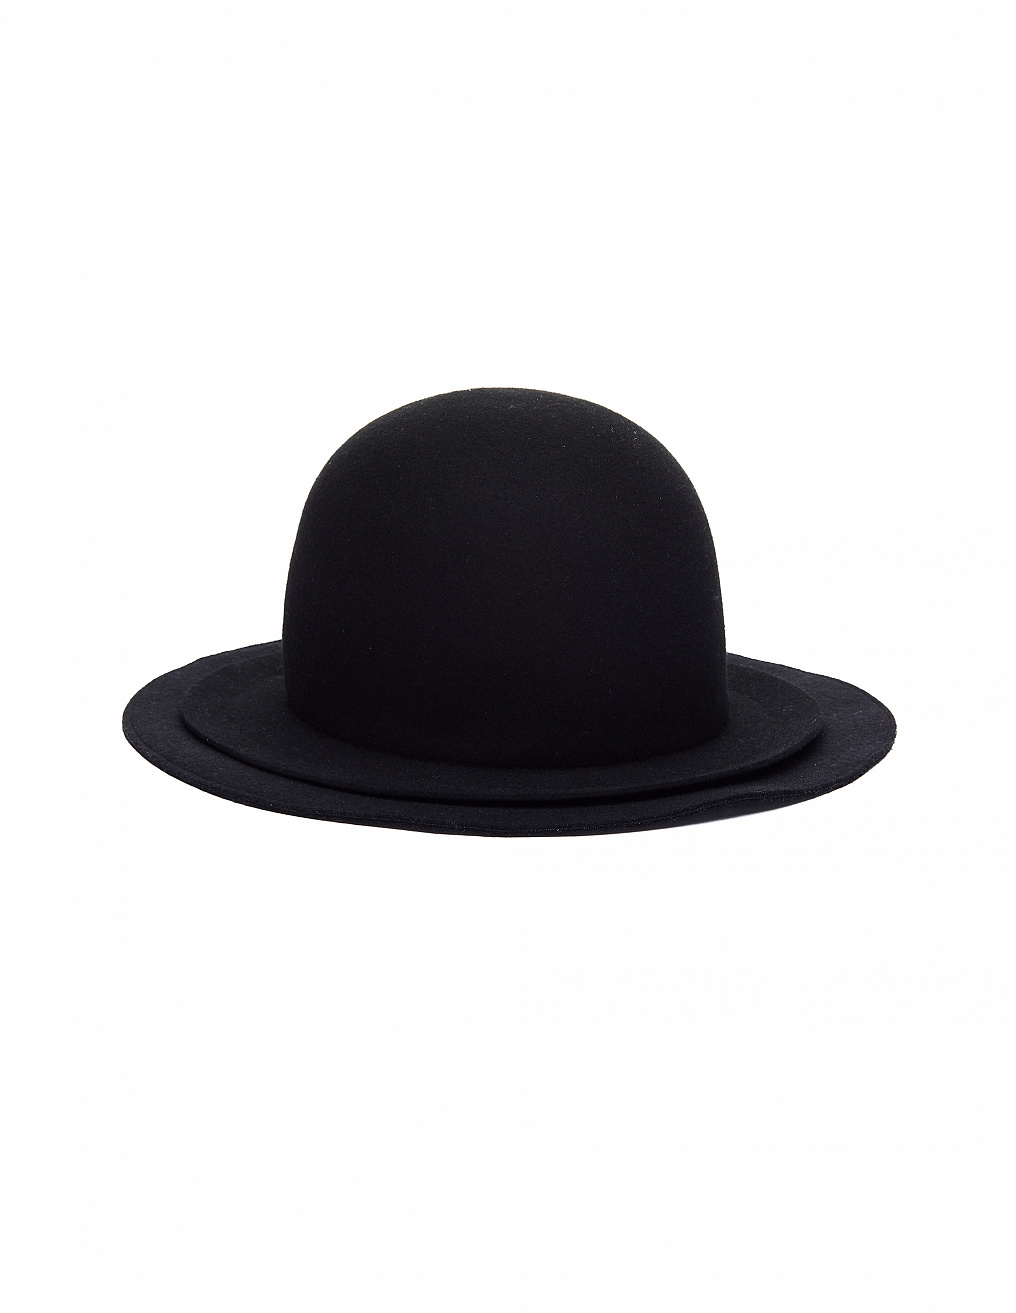 Yohji Yamamoto BLACK WOOL HAT